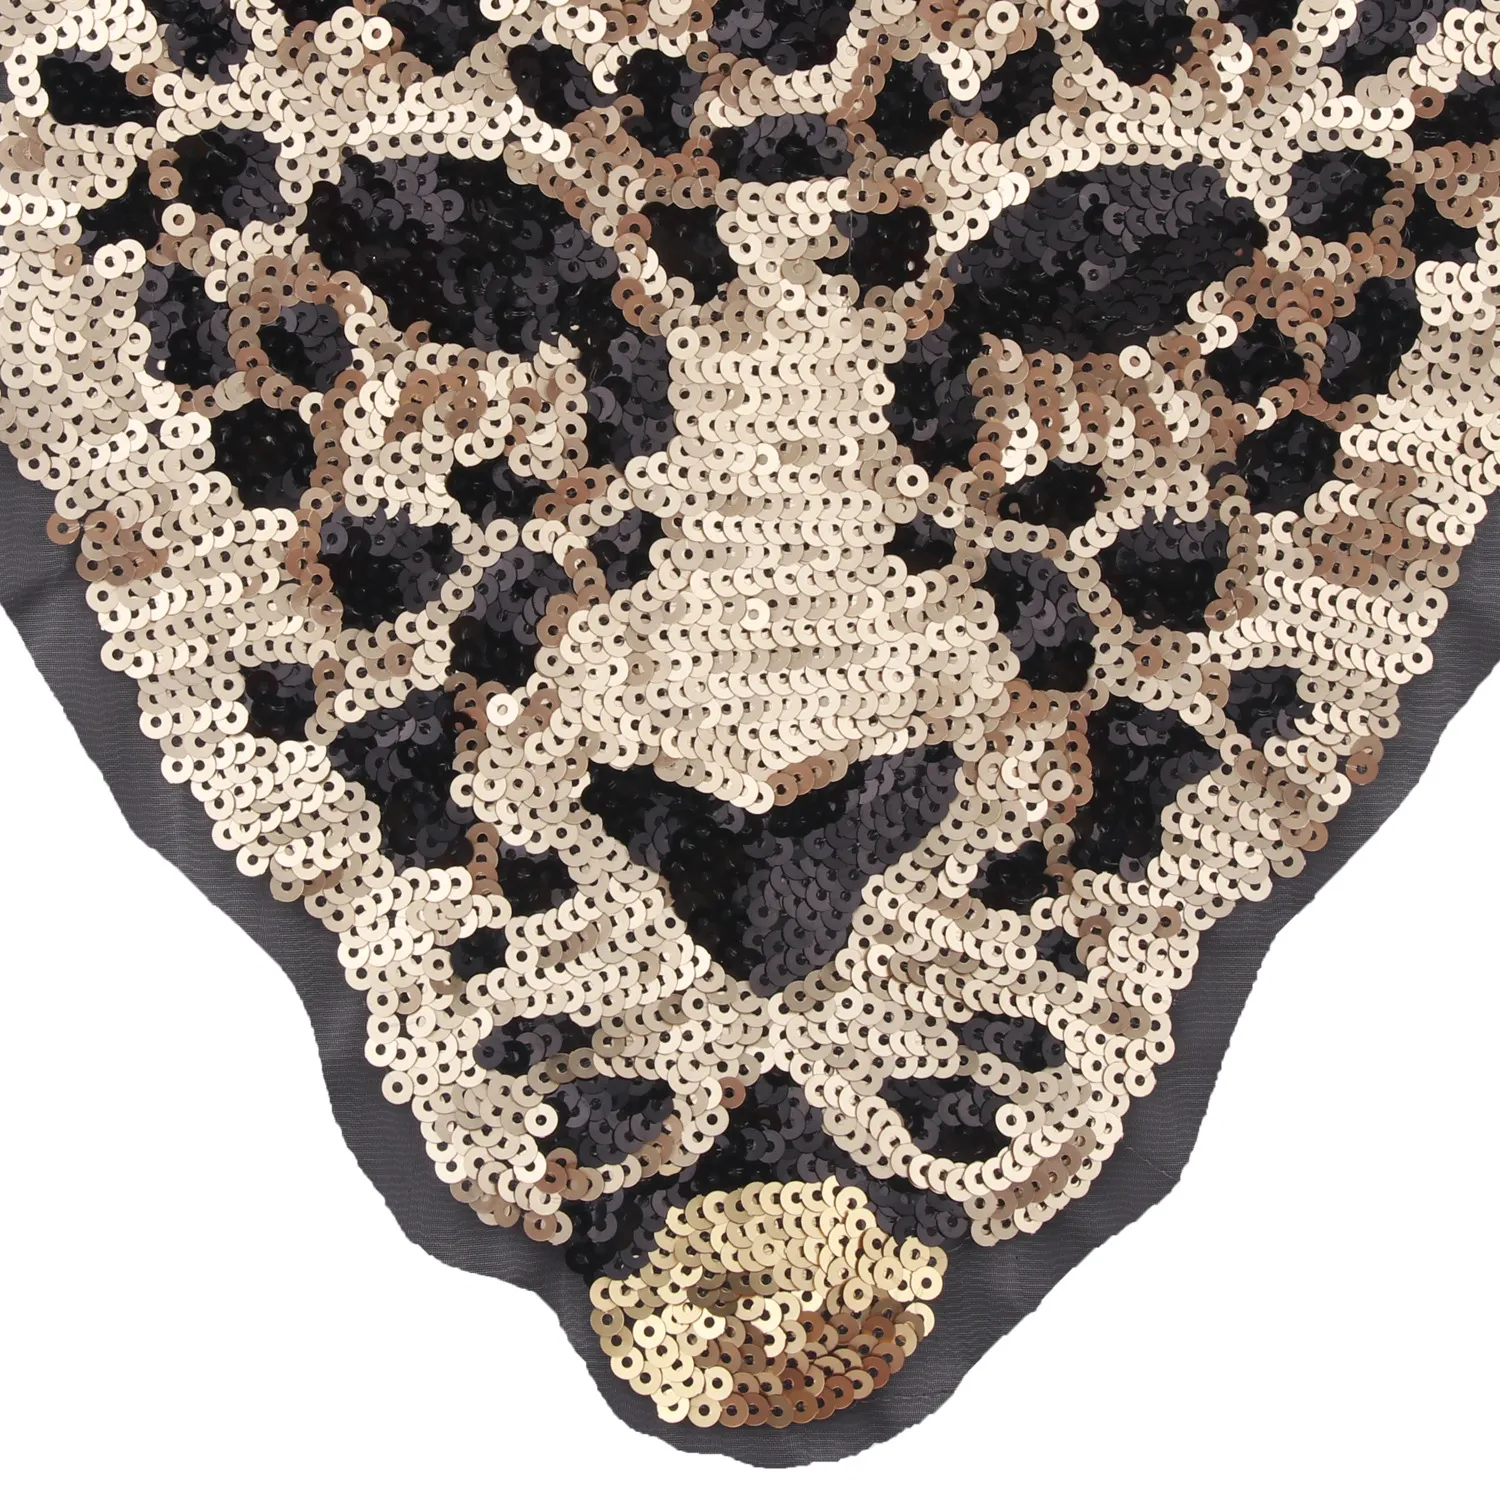 Neue Cartoon große Tier Pailletten Leopard Tiger Stickerei Tuch Patch Nähen auf Kleidung Zubehör Dekoration316u